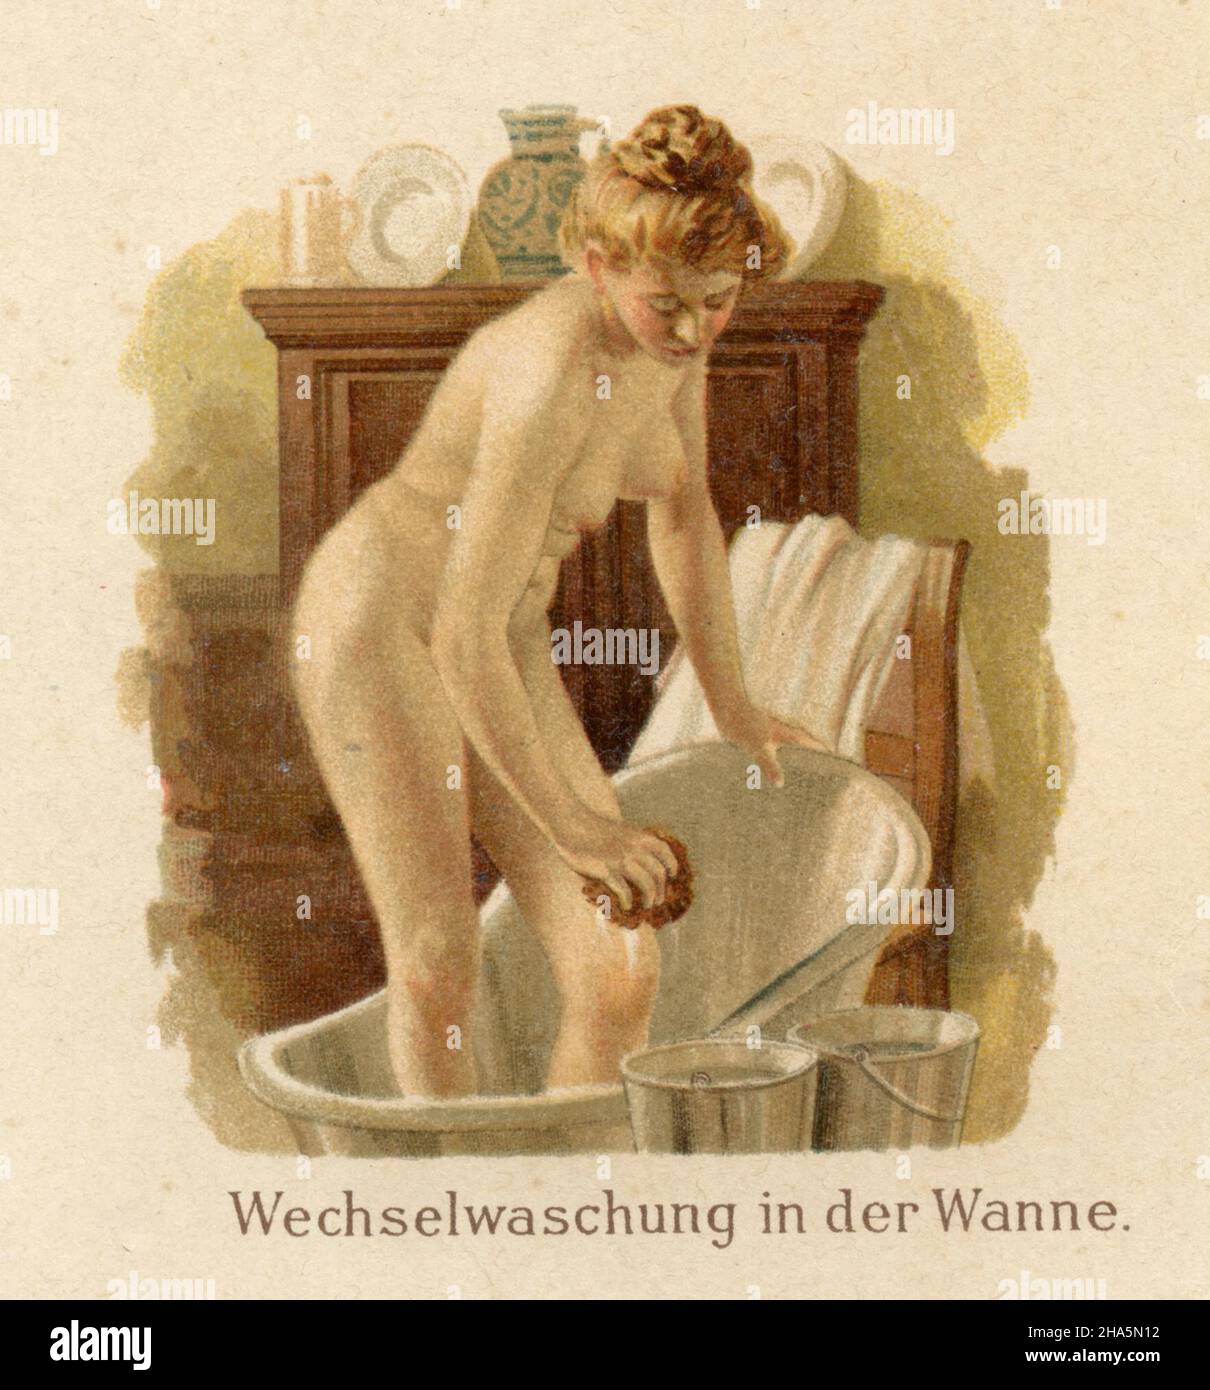 Applications de l'eau dans les soins infirmiers : lavage alternatif dans la baignoire , (livre de médecine, 1905) Banque D'Images